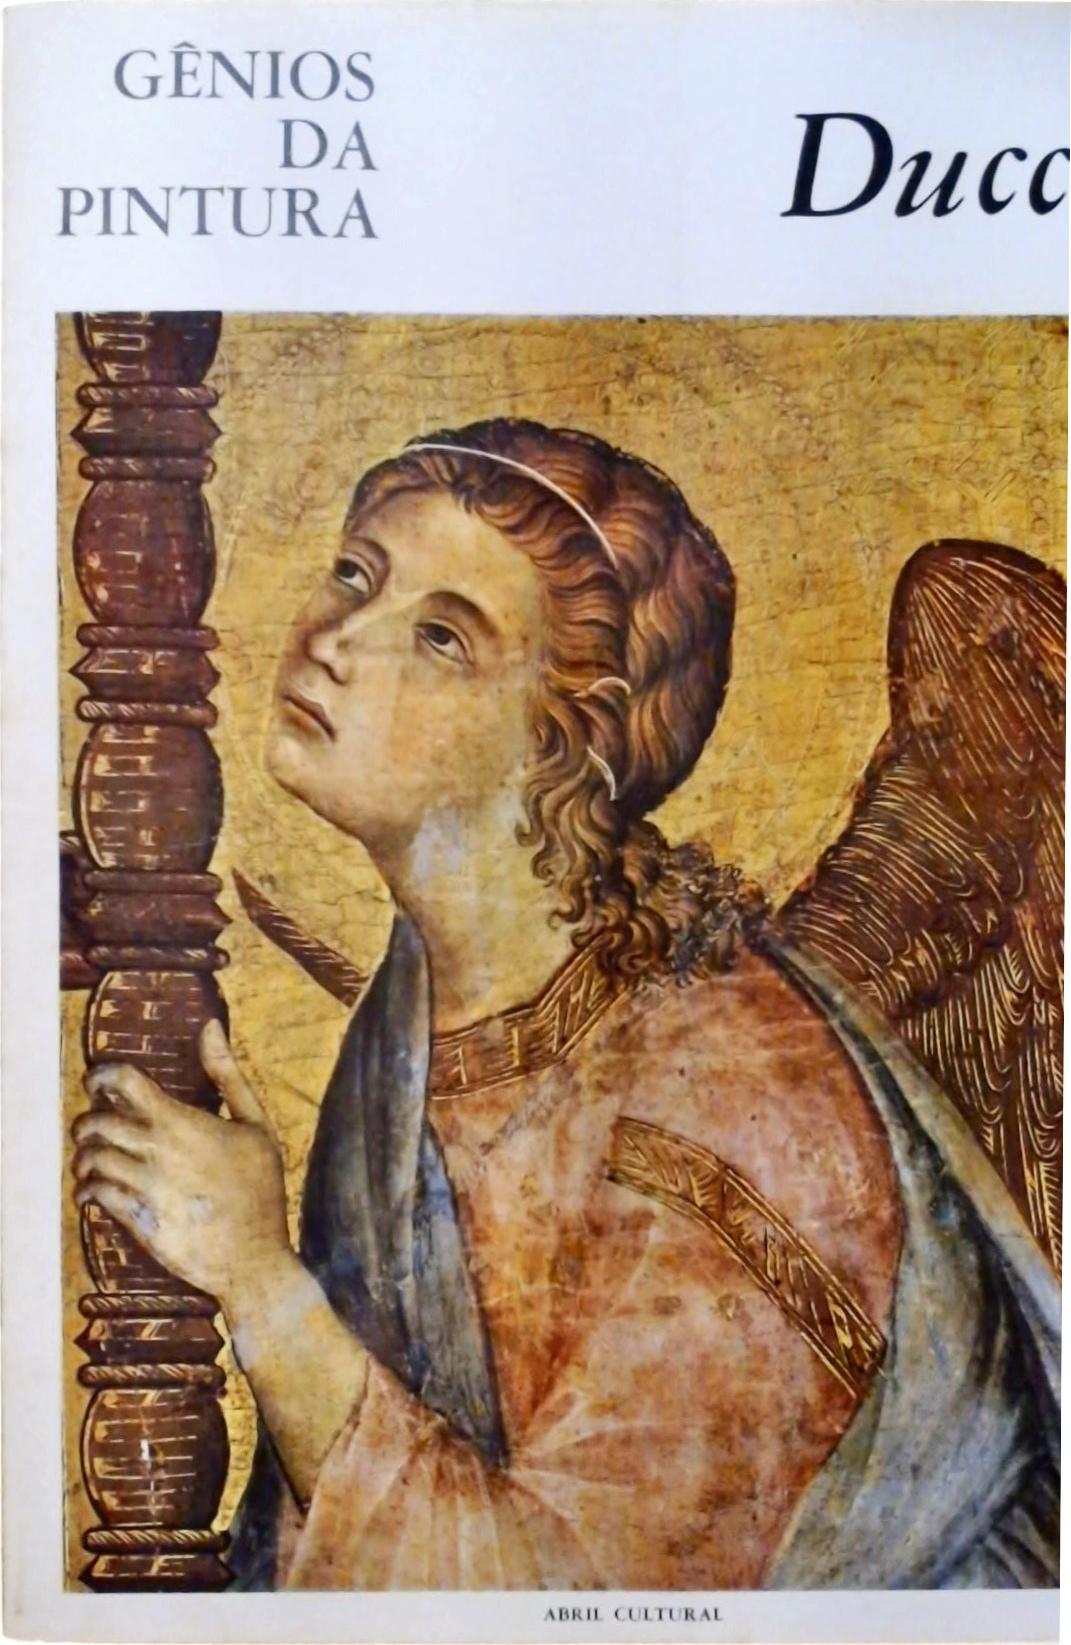 Gênios da Pintura - Duccio